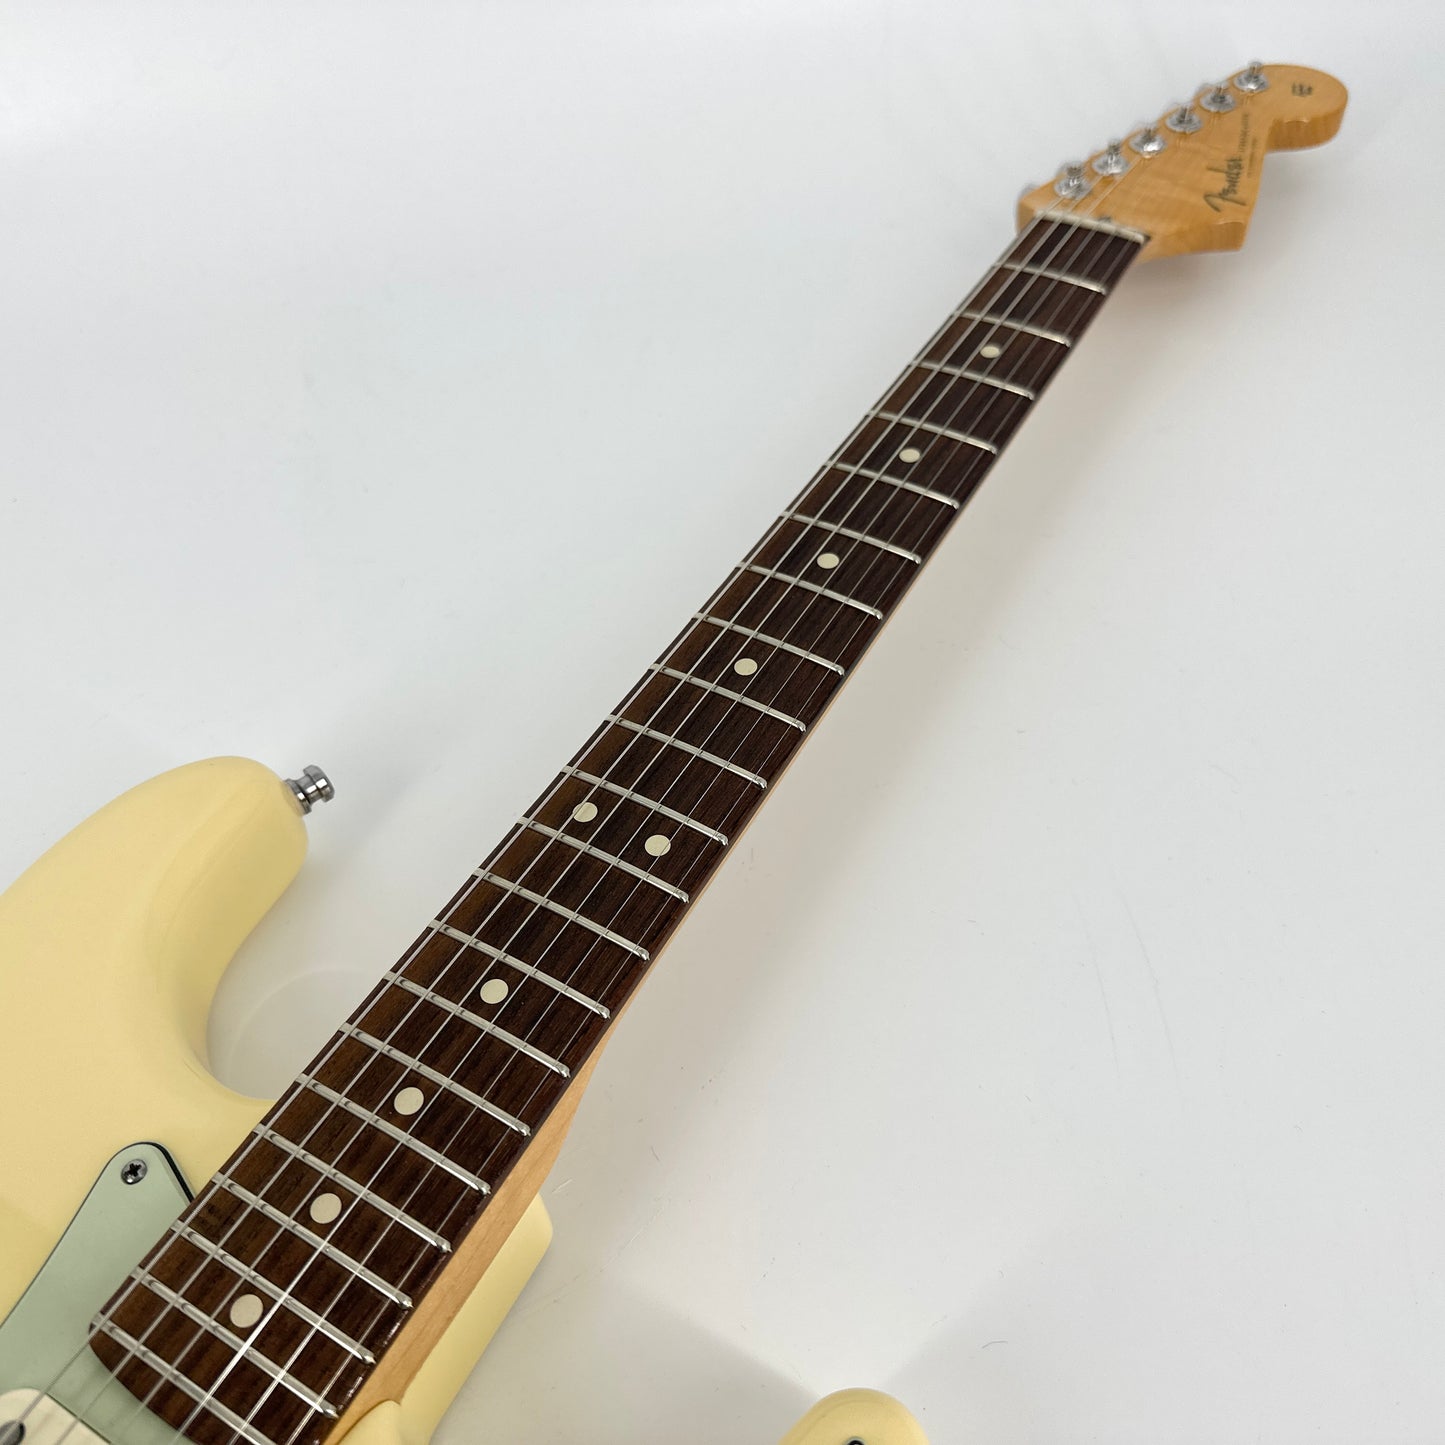 2011 Fender Custom Shop Custom Deluxe Stratocaster - Abby pickups – Vintage White